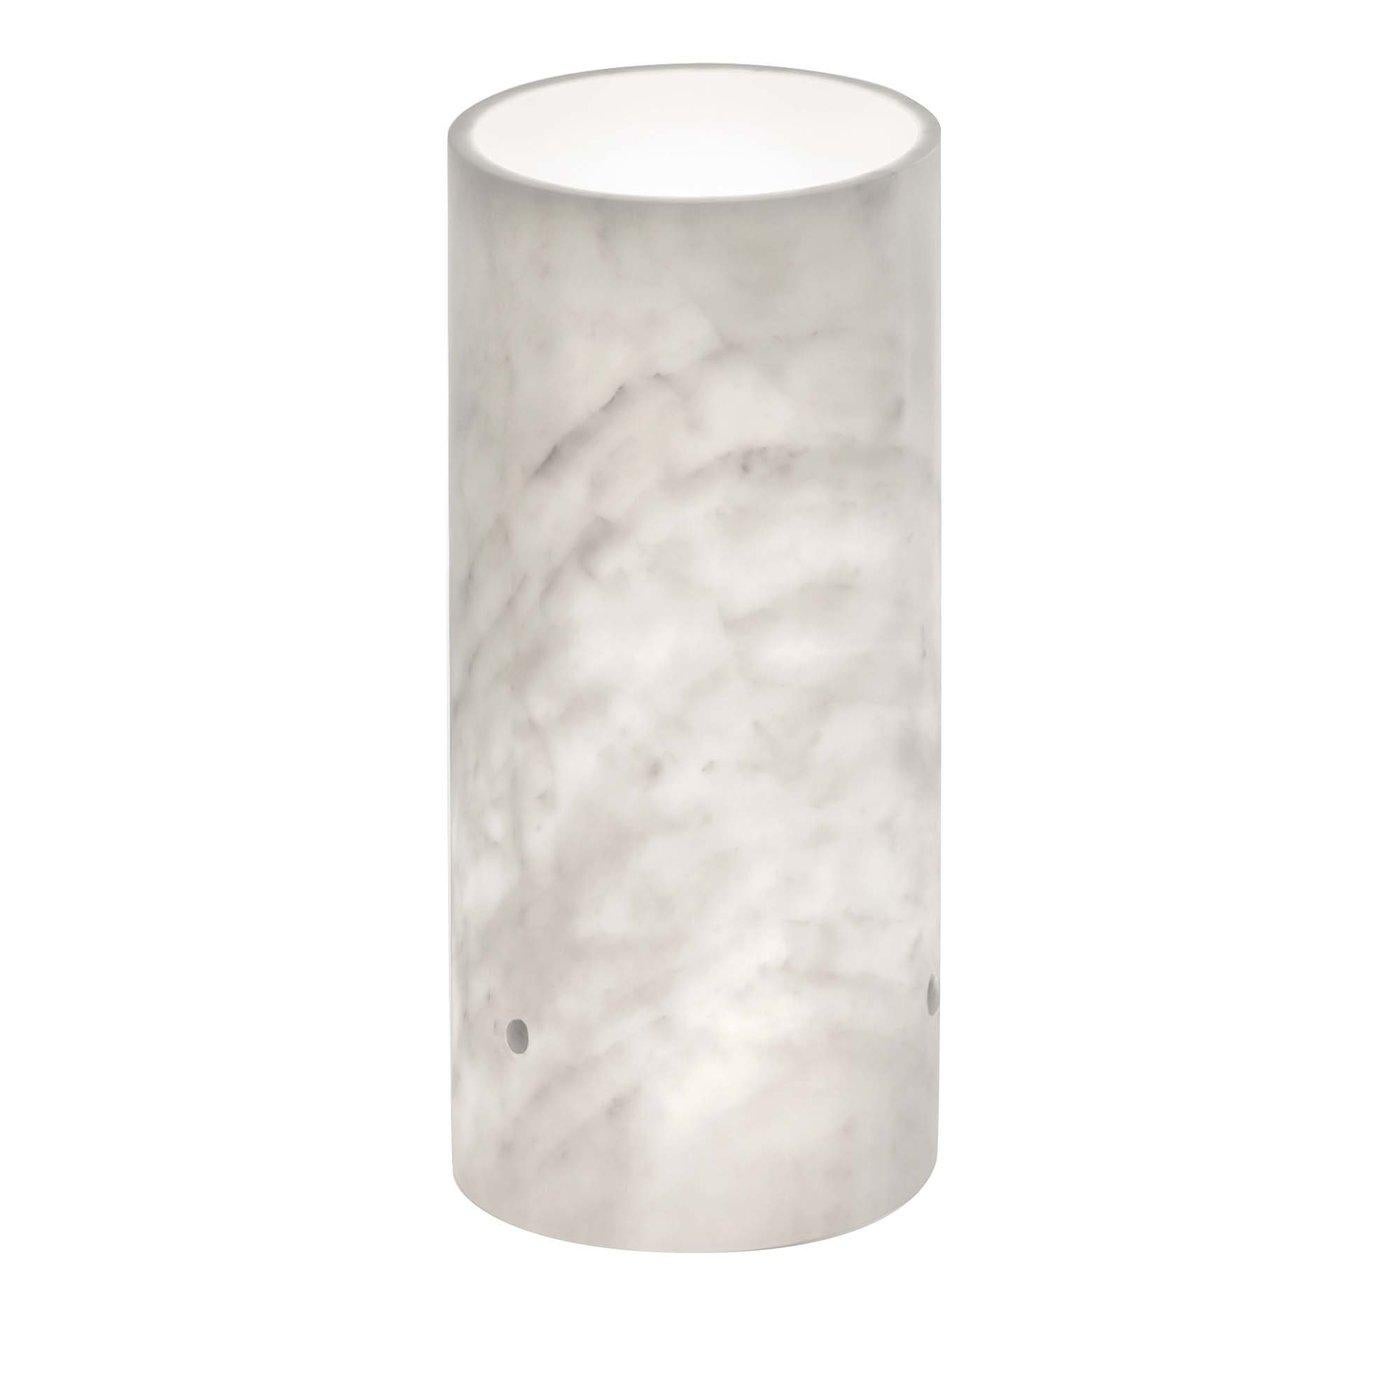 Lampe aus weißem Carrara-Marmor, matt poliert.
 